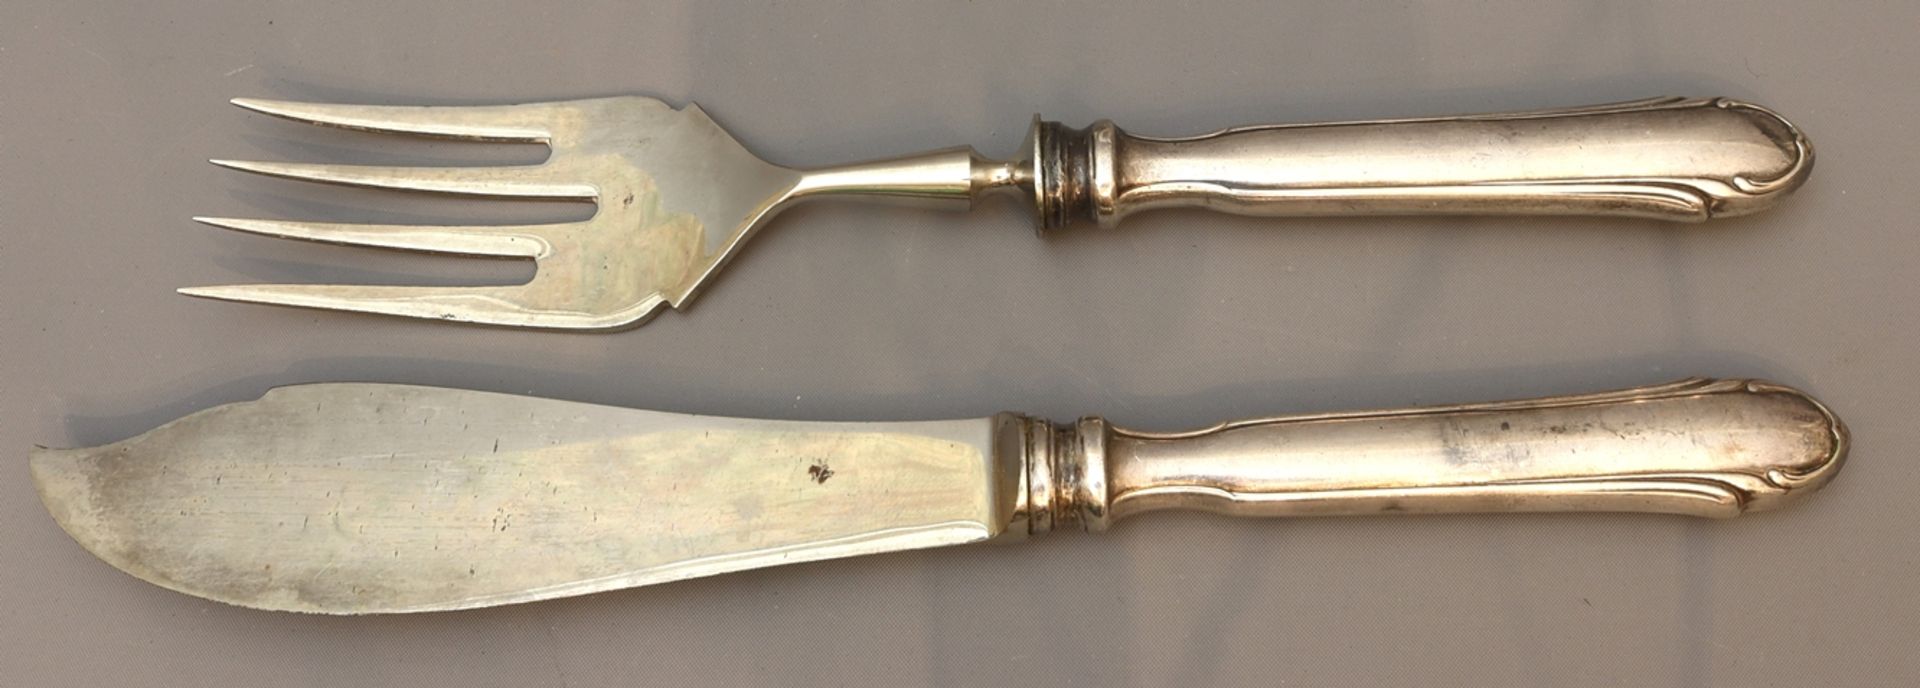 Baroque style serving cutlery, Historicism circa 1900-1920, German